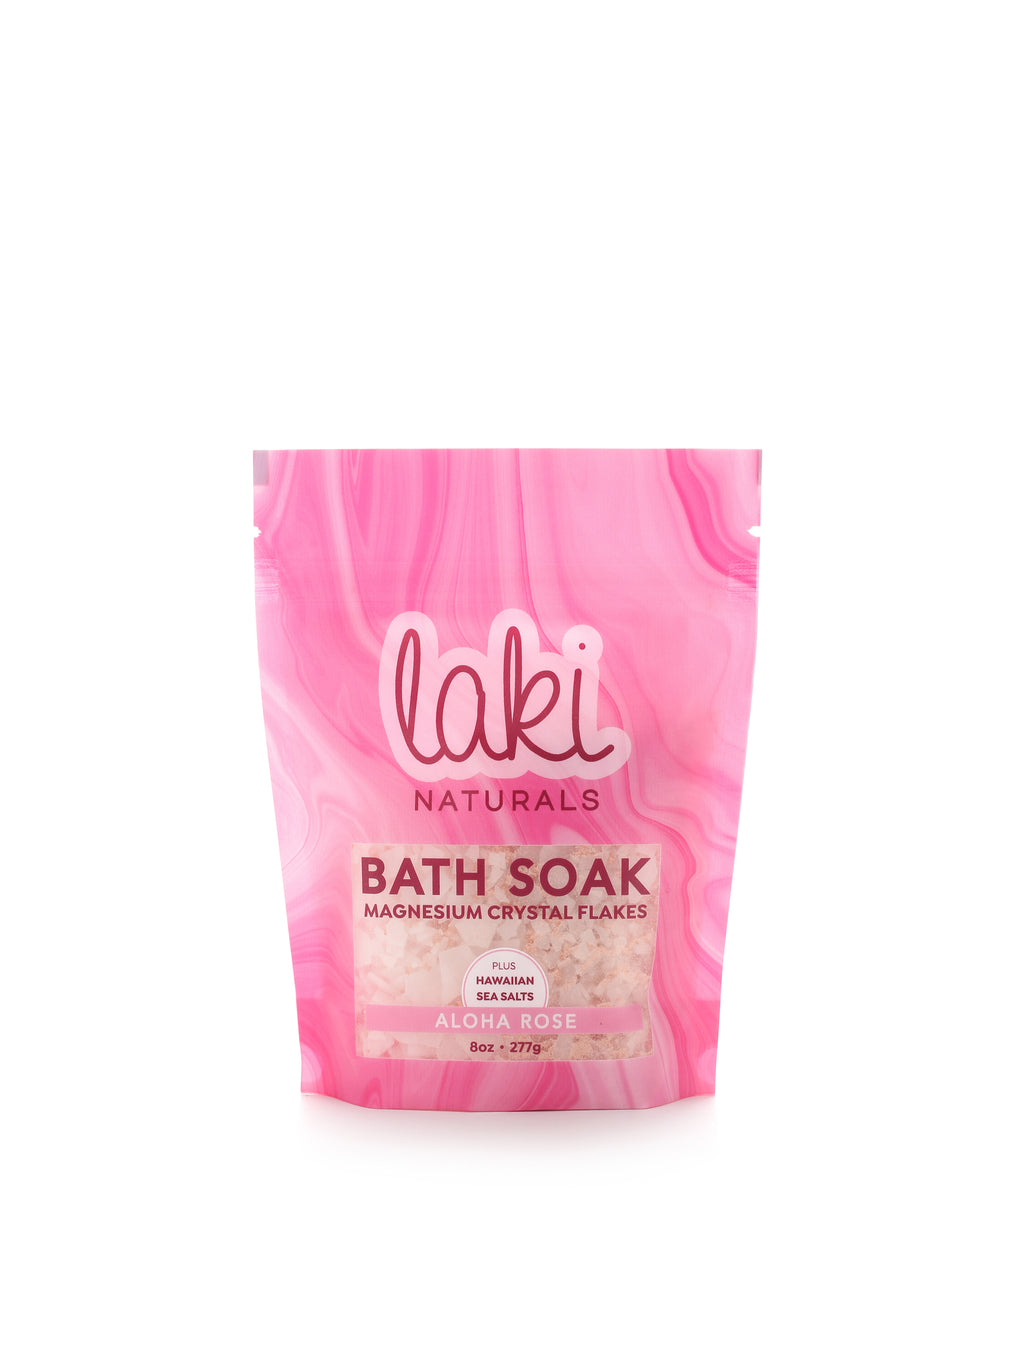 Aloha Rose Magnesium Flakes Bath Soak 8 oz or 16 oz - Laki Naturals